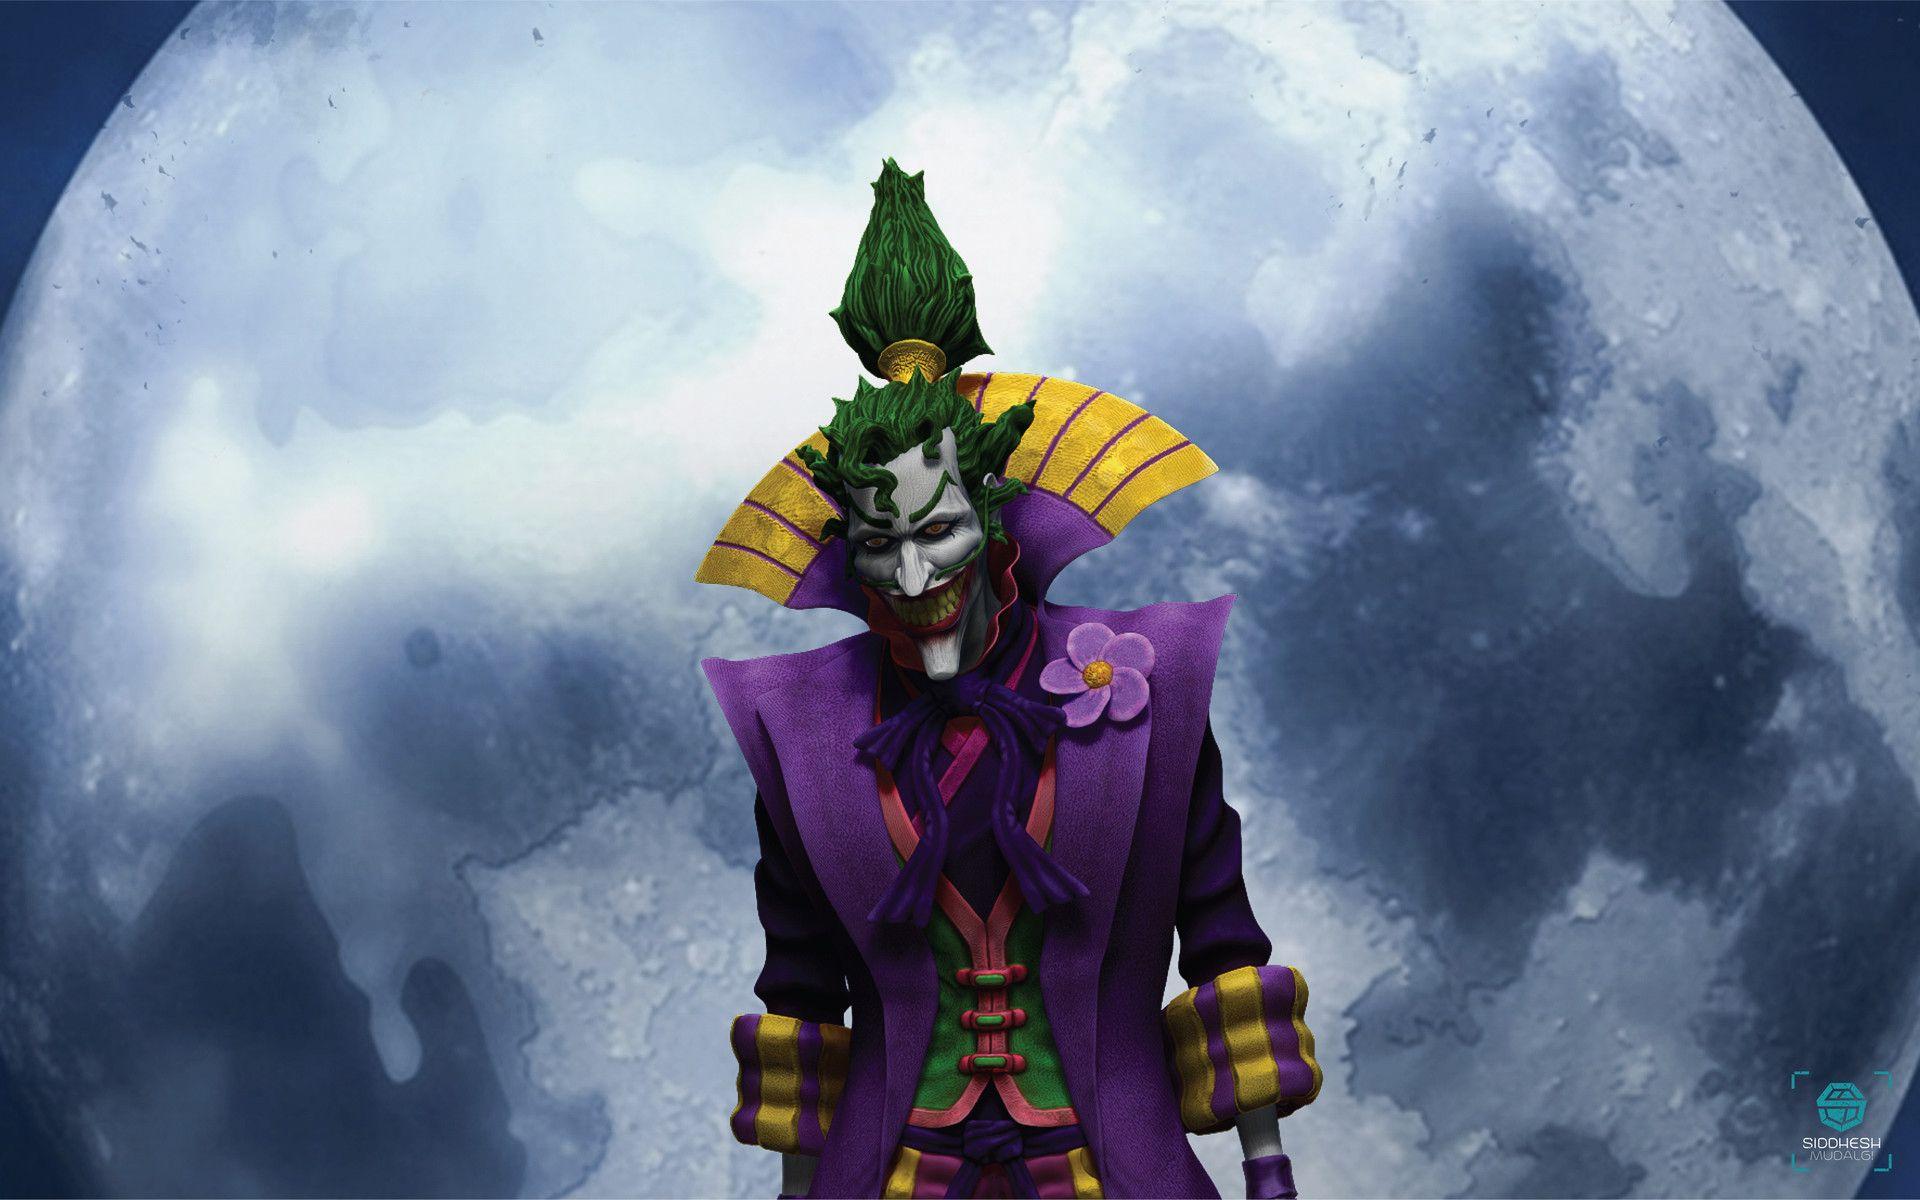 Demon King Lord Joker, Siddhesh Mudalgi